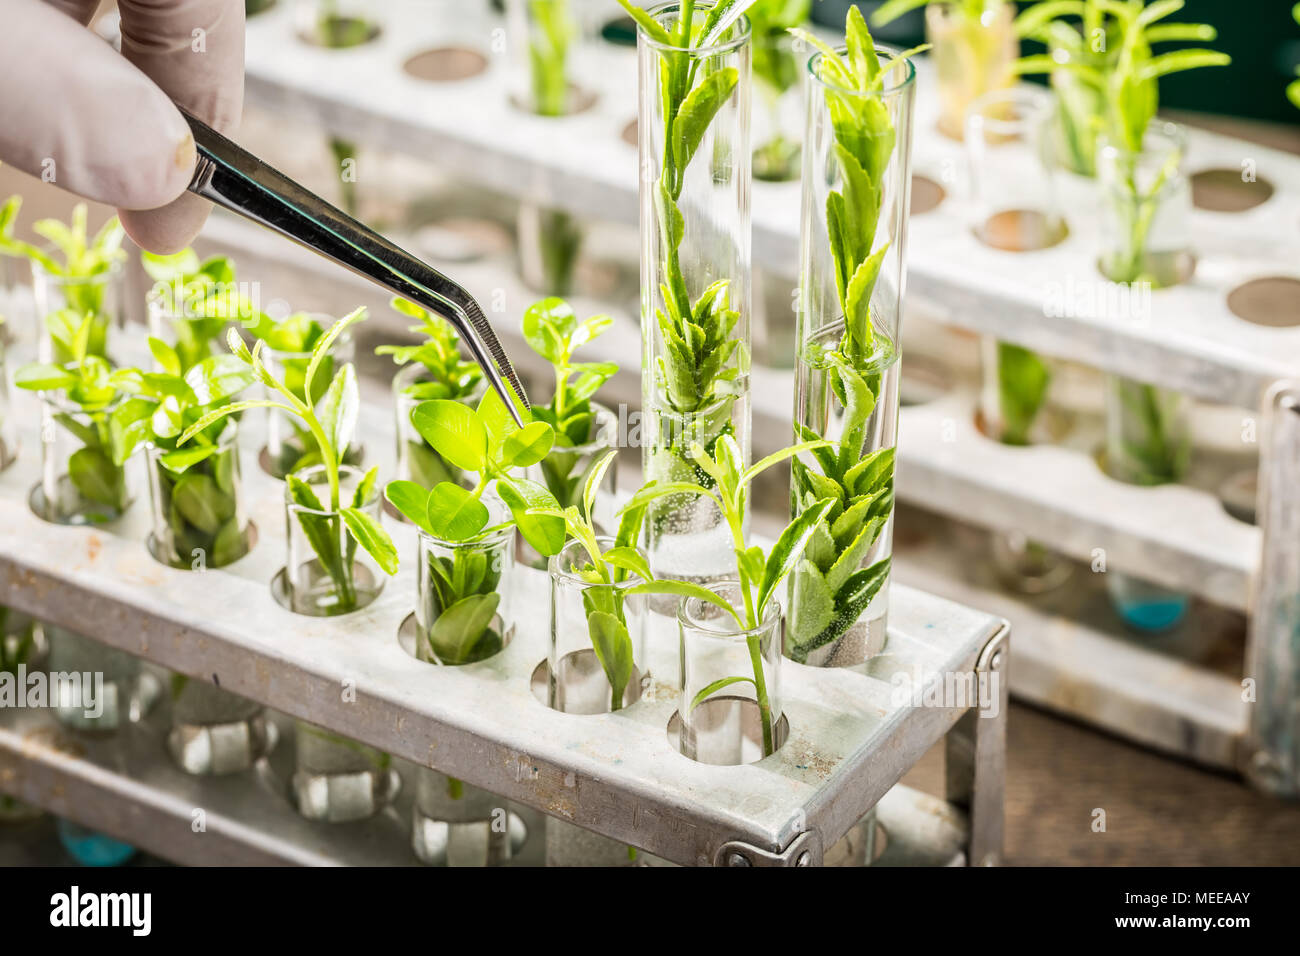 School lab exploring new methods of plant breeding Stock Photo